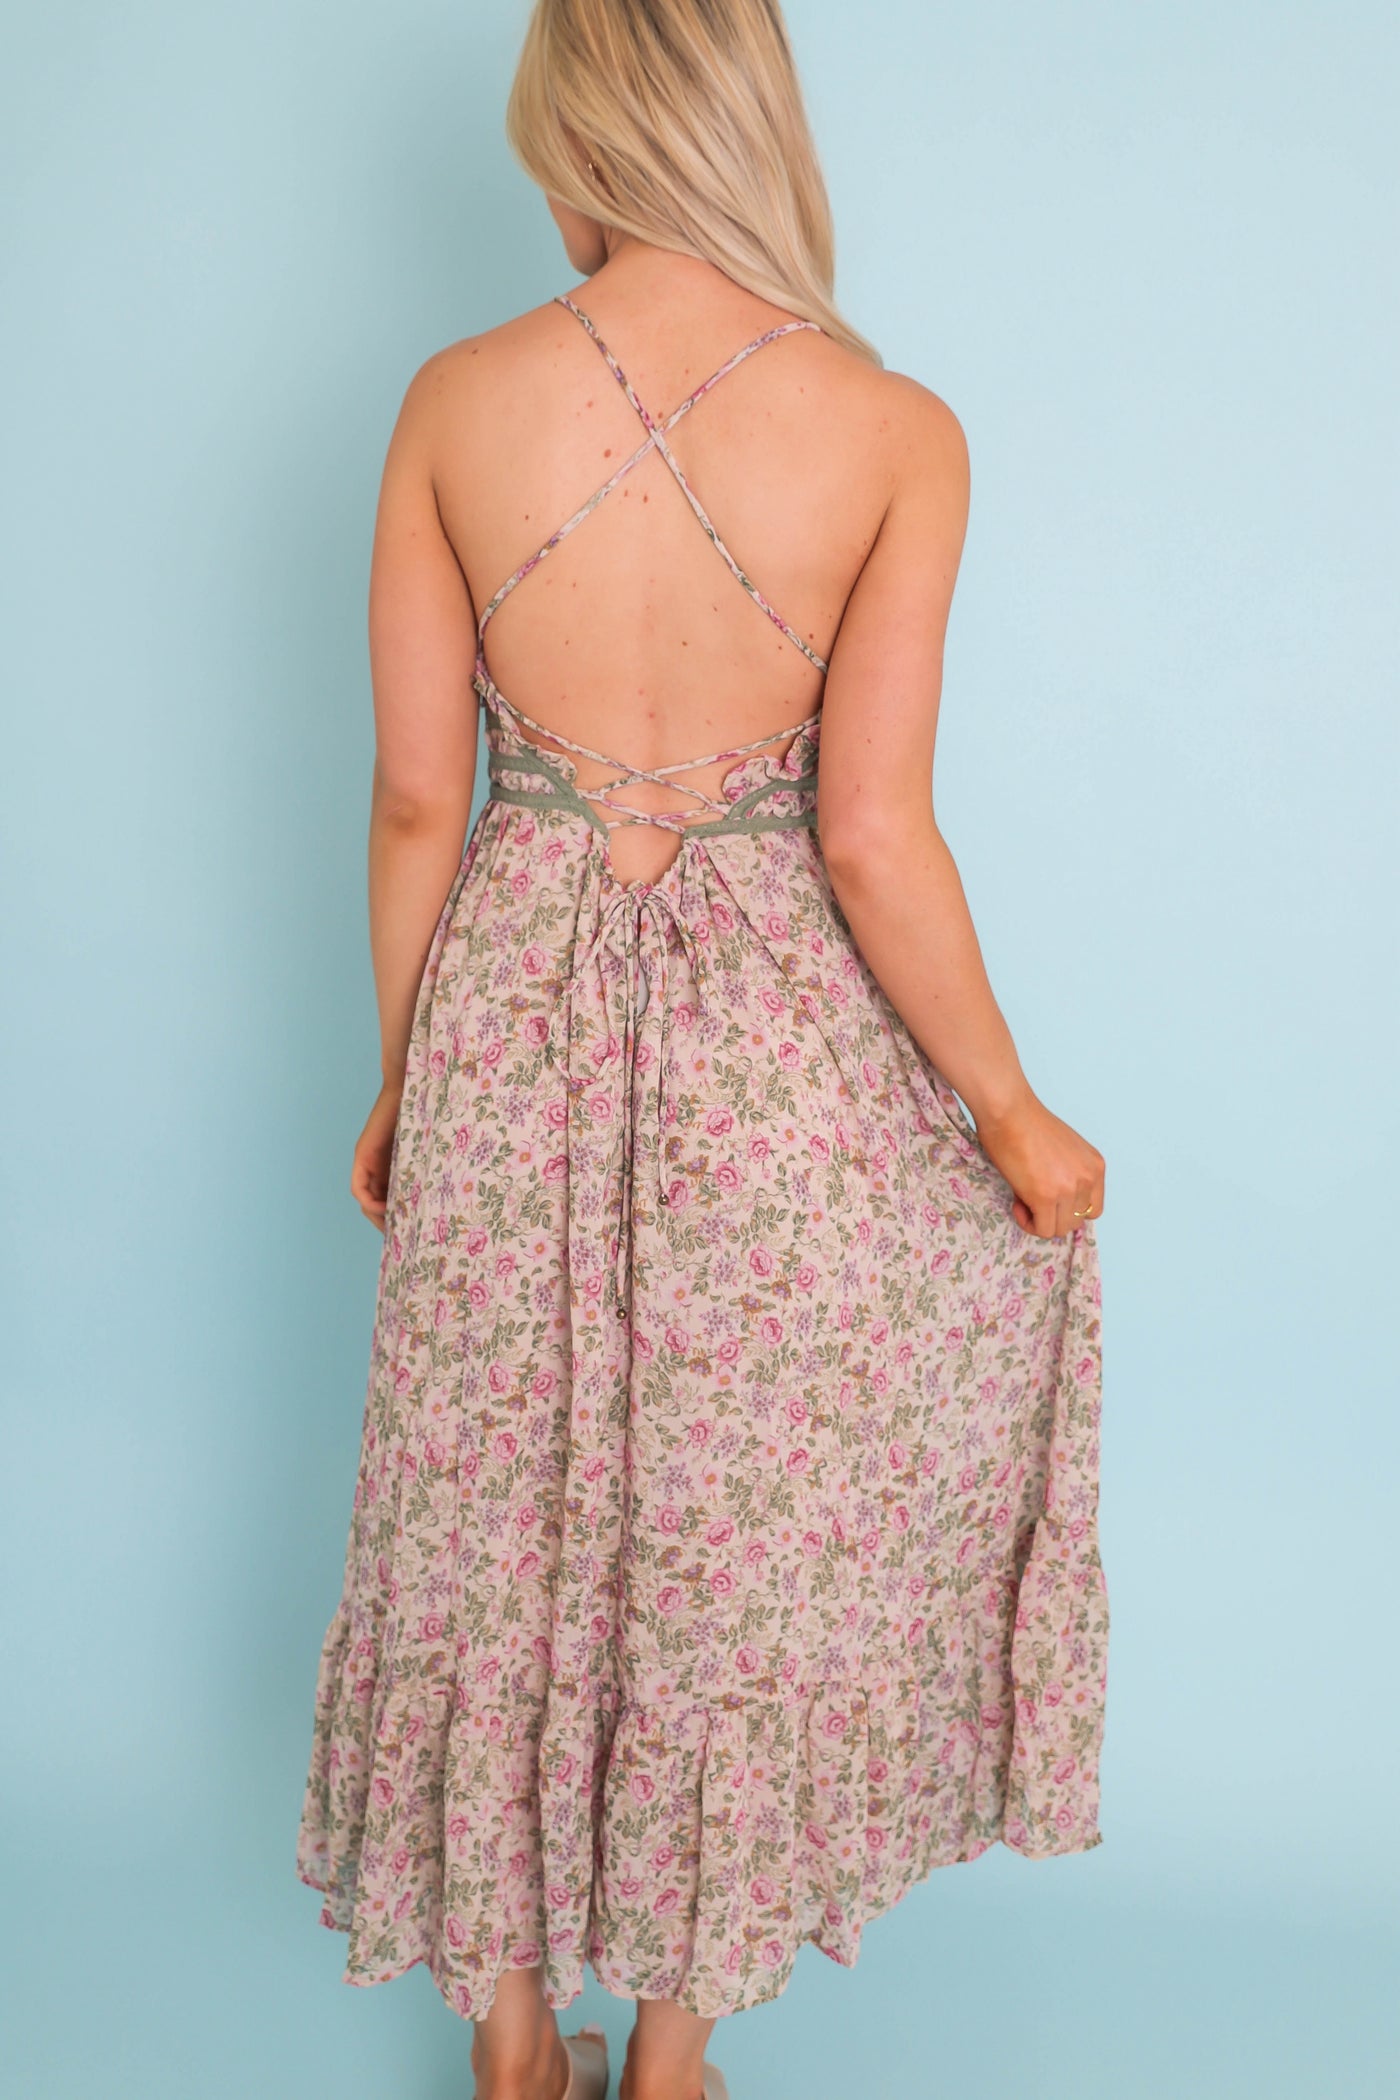 Vintage Petite Rose Lace Trim Midi Dress- Dress Forum Midi Dress